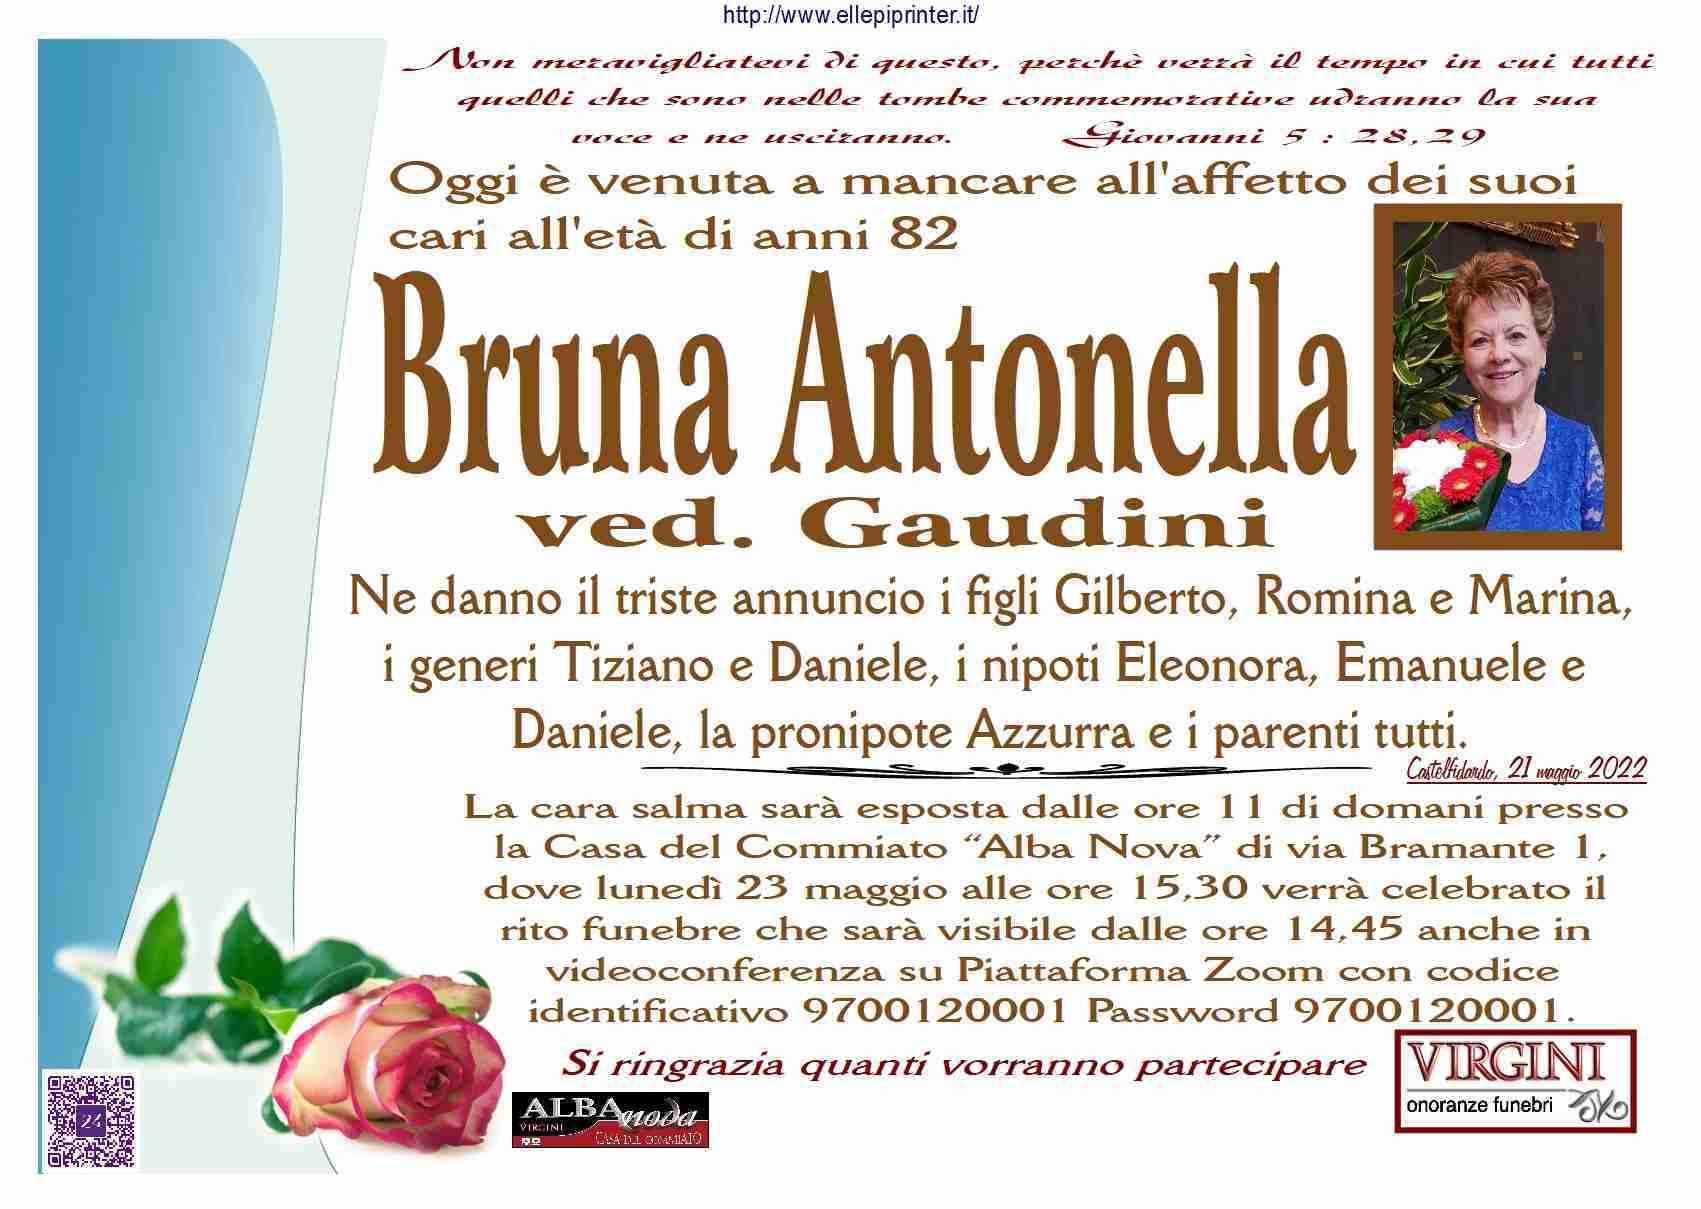 Bruna Antonella